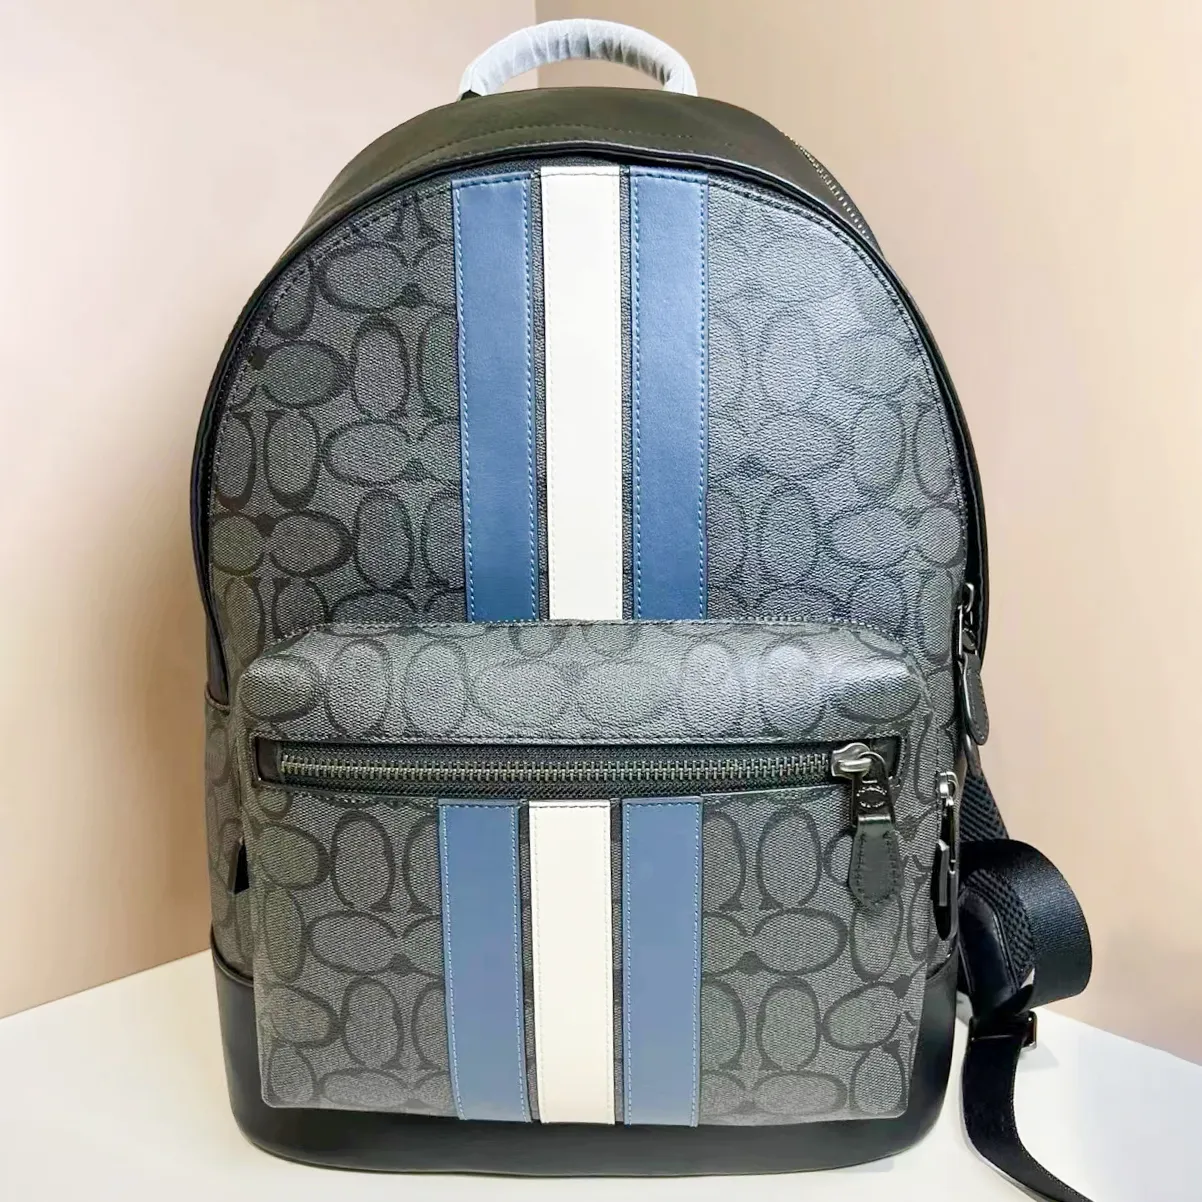 Coach masque sac à dos sac à dos école miroir de qualité livre de bookbags luxury back pack cuir ville sac extérieur sac à épaule de voyage